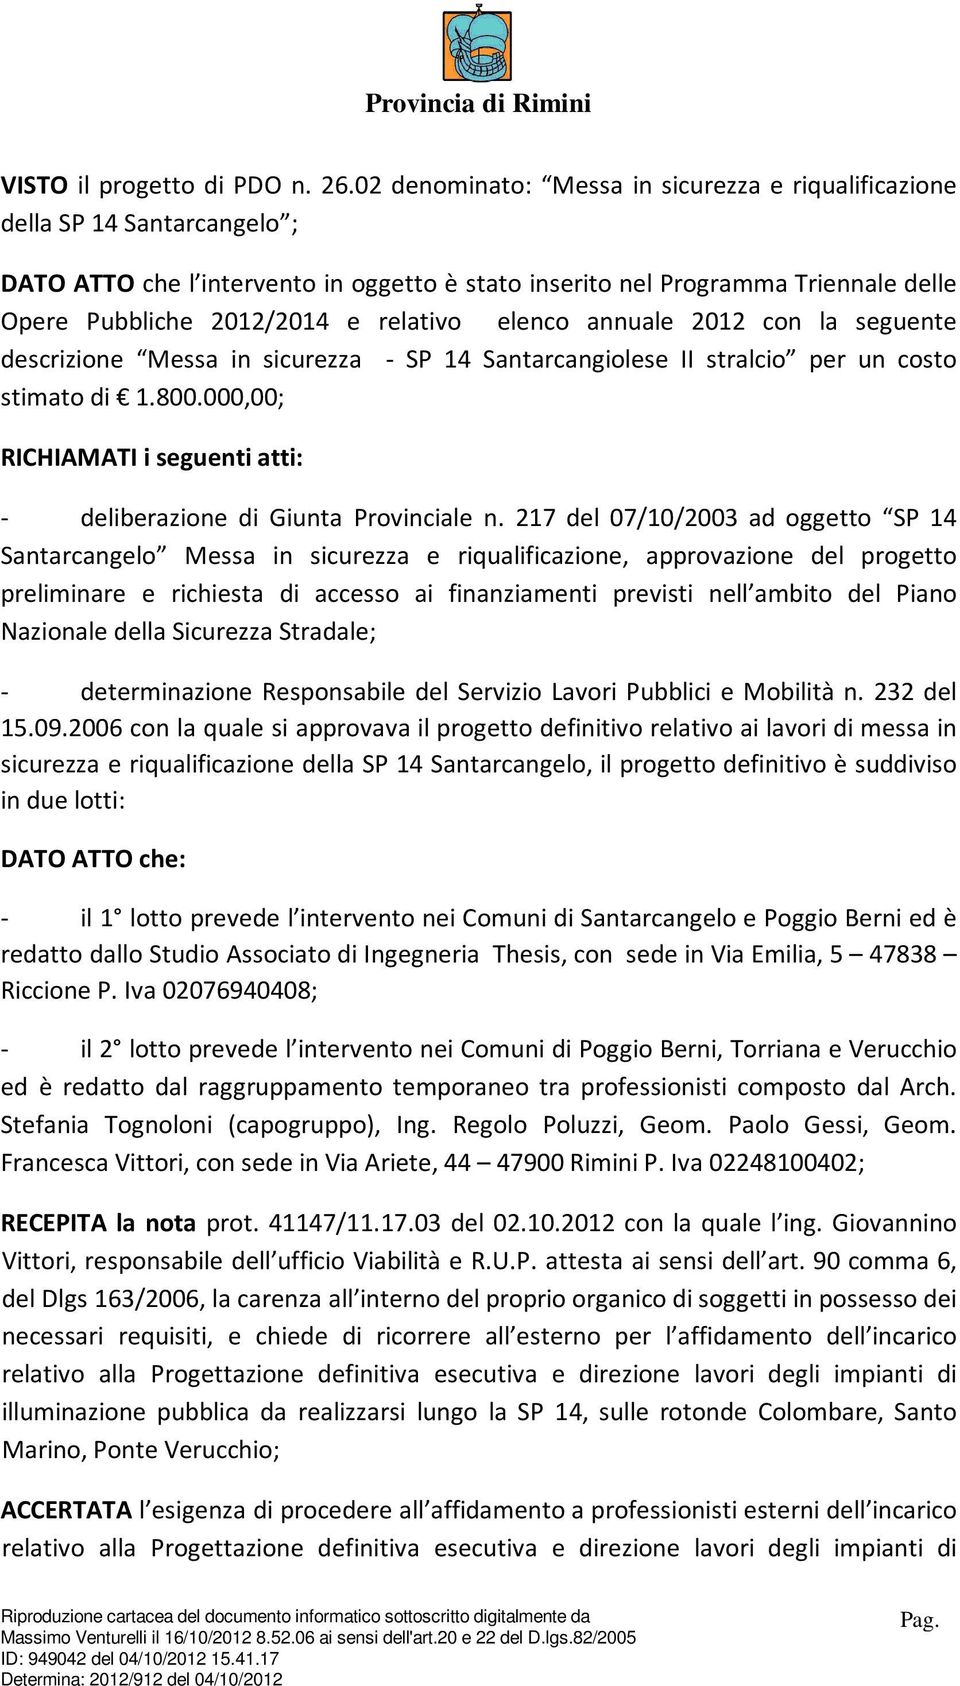 relativo elenco annuale 2012 con la seguente descrizione Messa in sicurezza - SP 14 Santarcangiolese II stralcio per un costo stimato di 1.800.